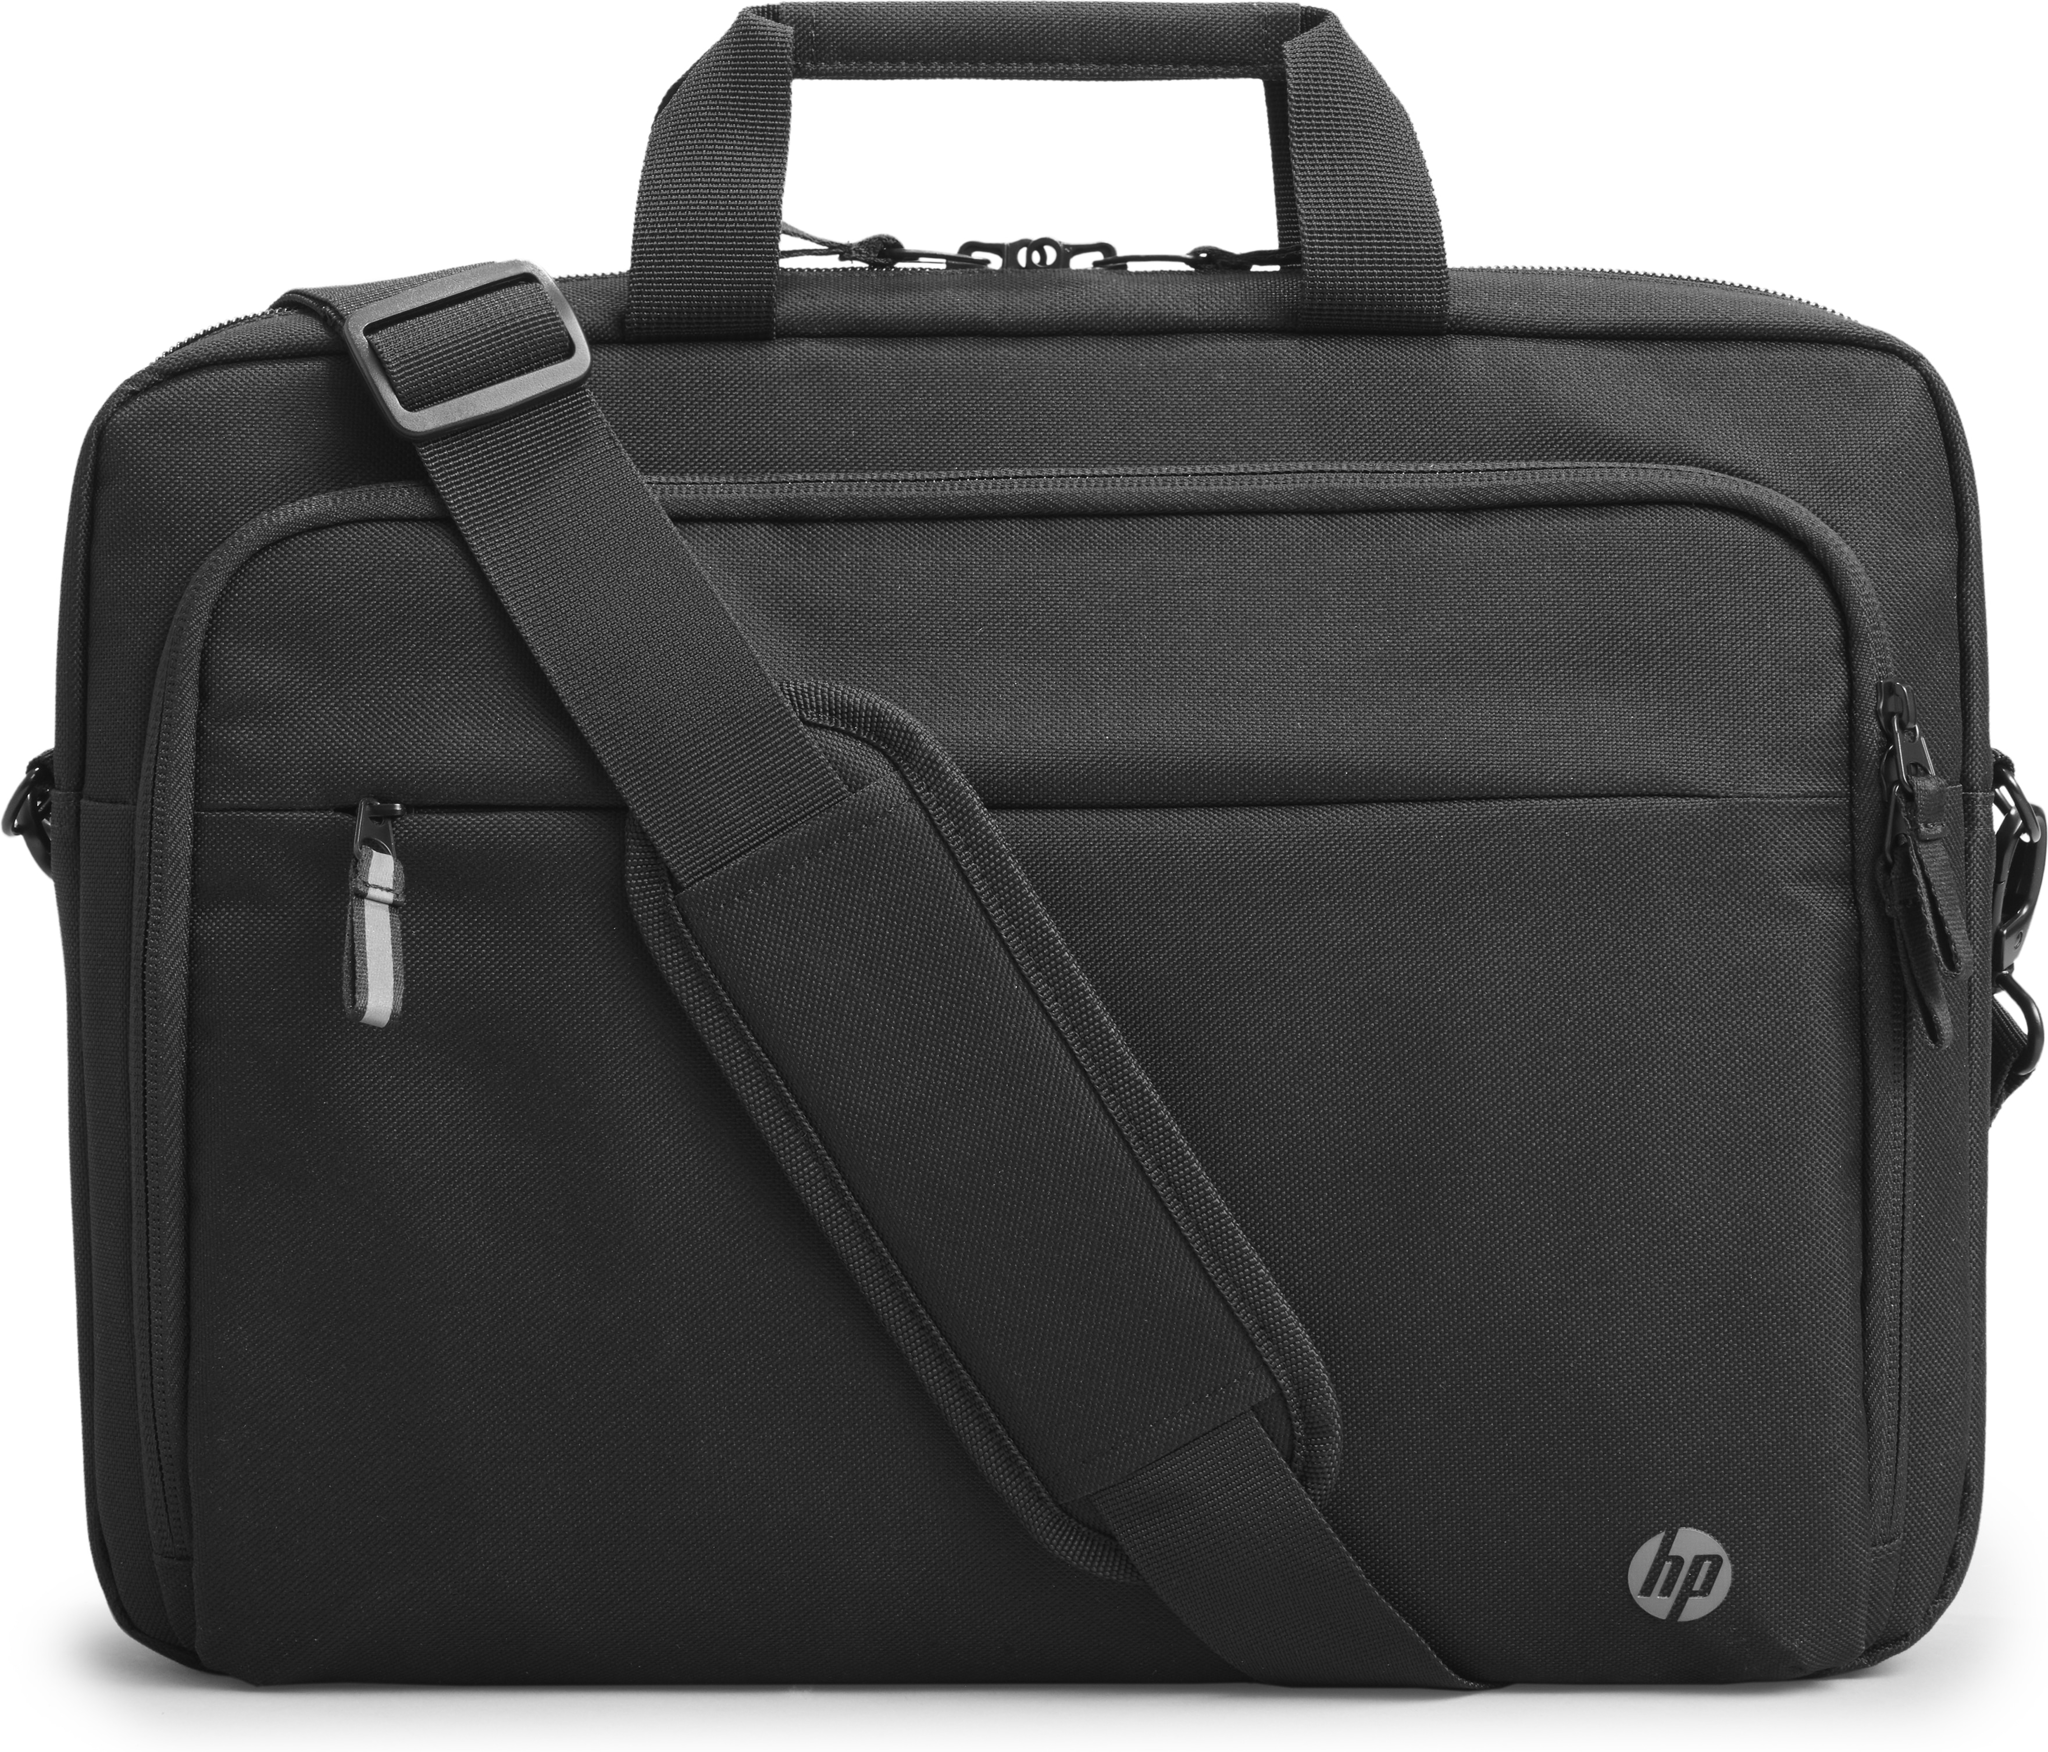 Bild von HP Professional 15.6-inch Laptop Bag - Messengerhülle - 39,6 cm (15.6") - 610 g